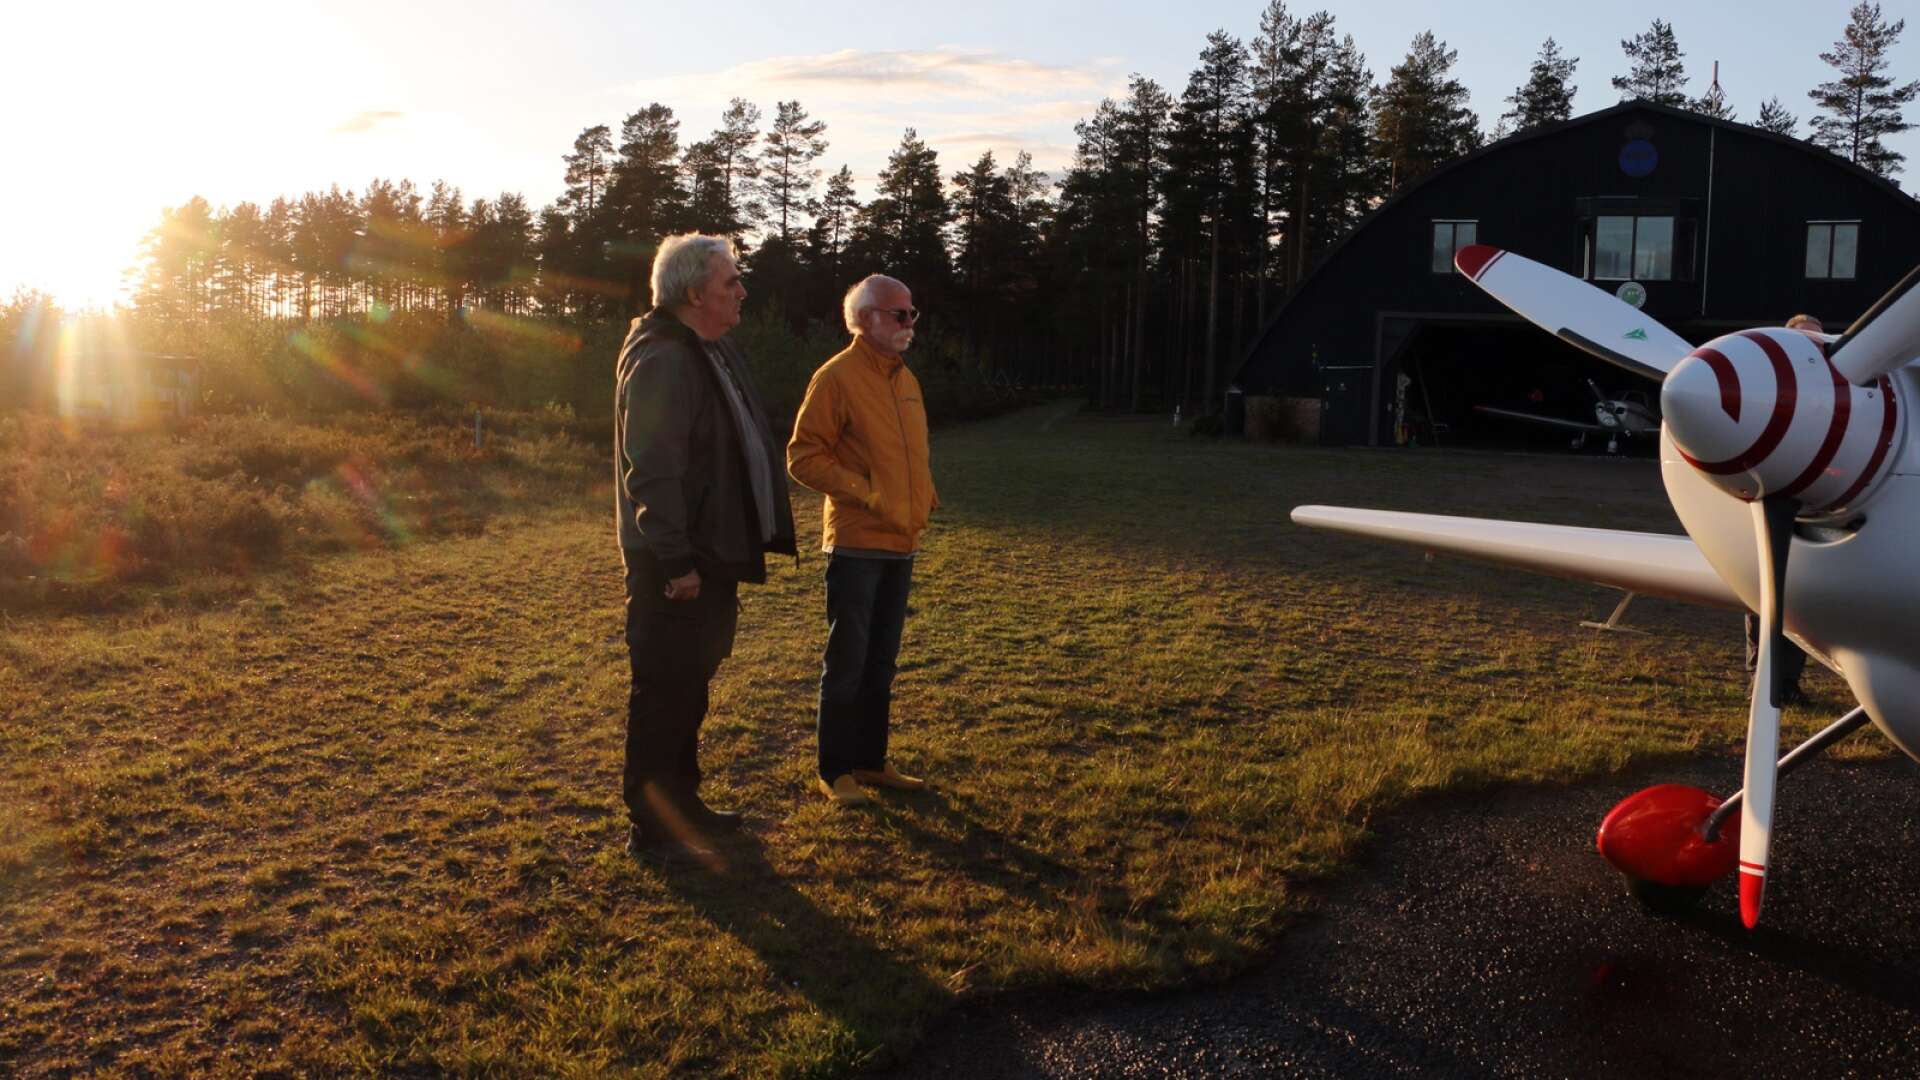 Brattforshedens flygklubb är en aktiv flygklubb. Från vänster Kim Bergman, ordförande i klubben, och Charlie Bäckstrand, sekreterare.